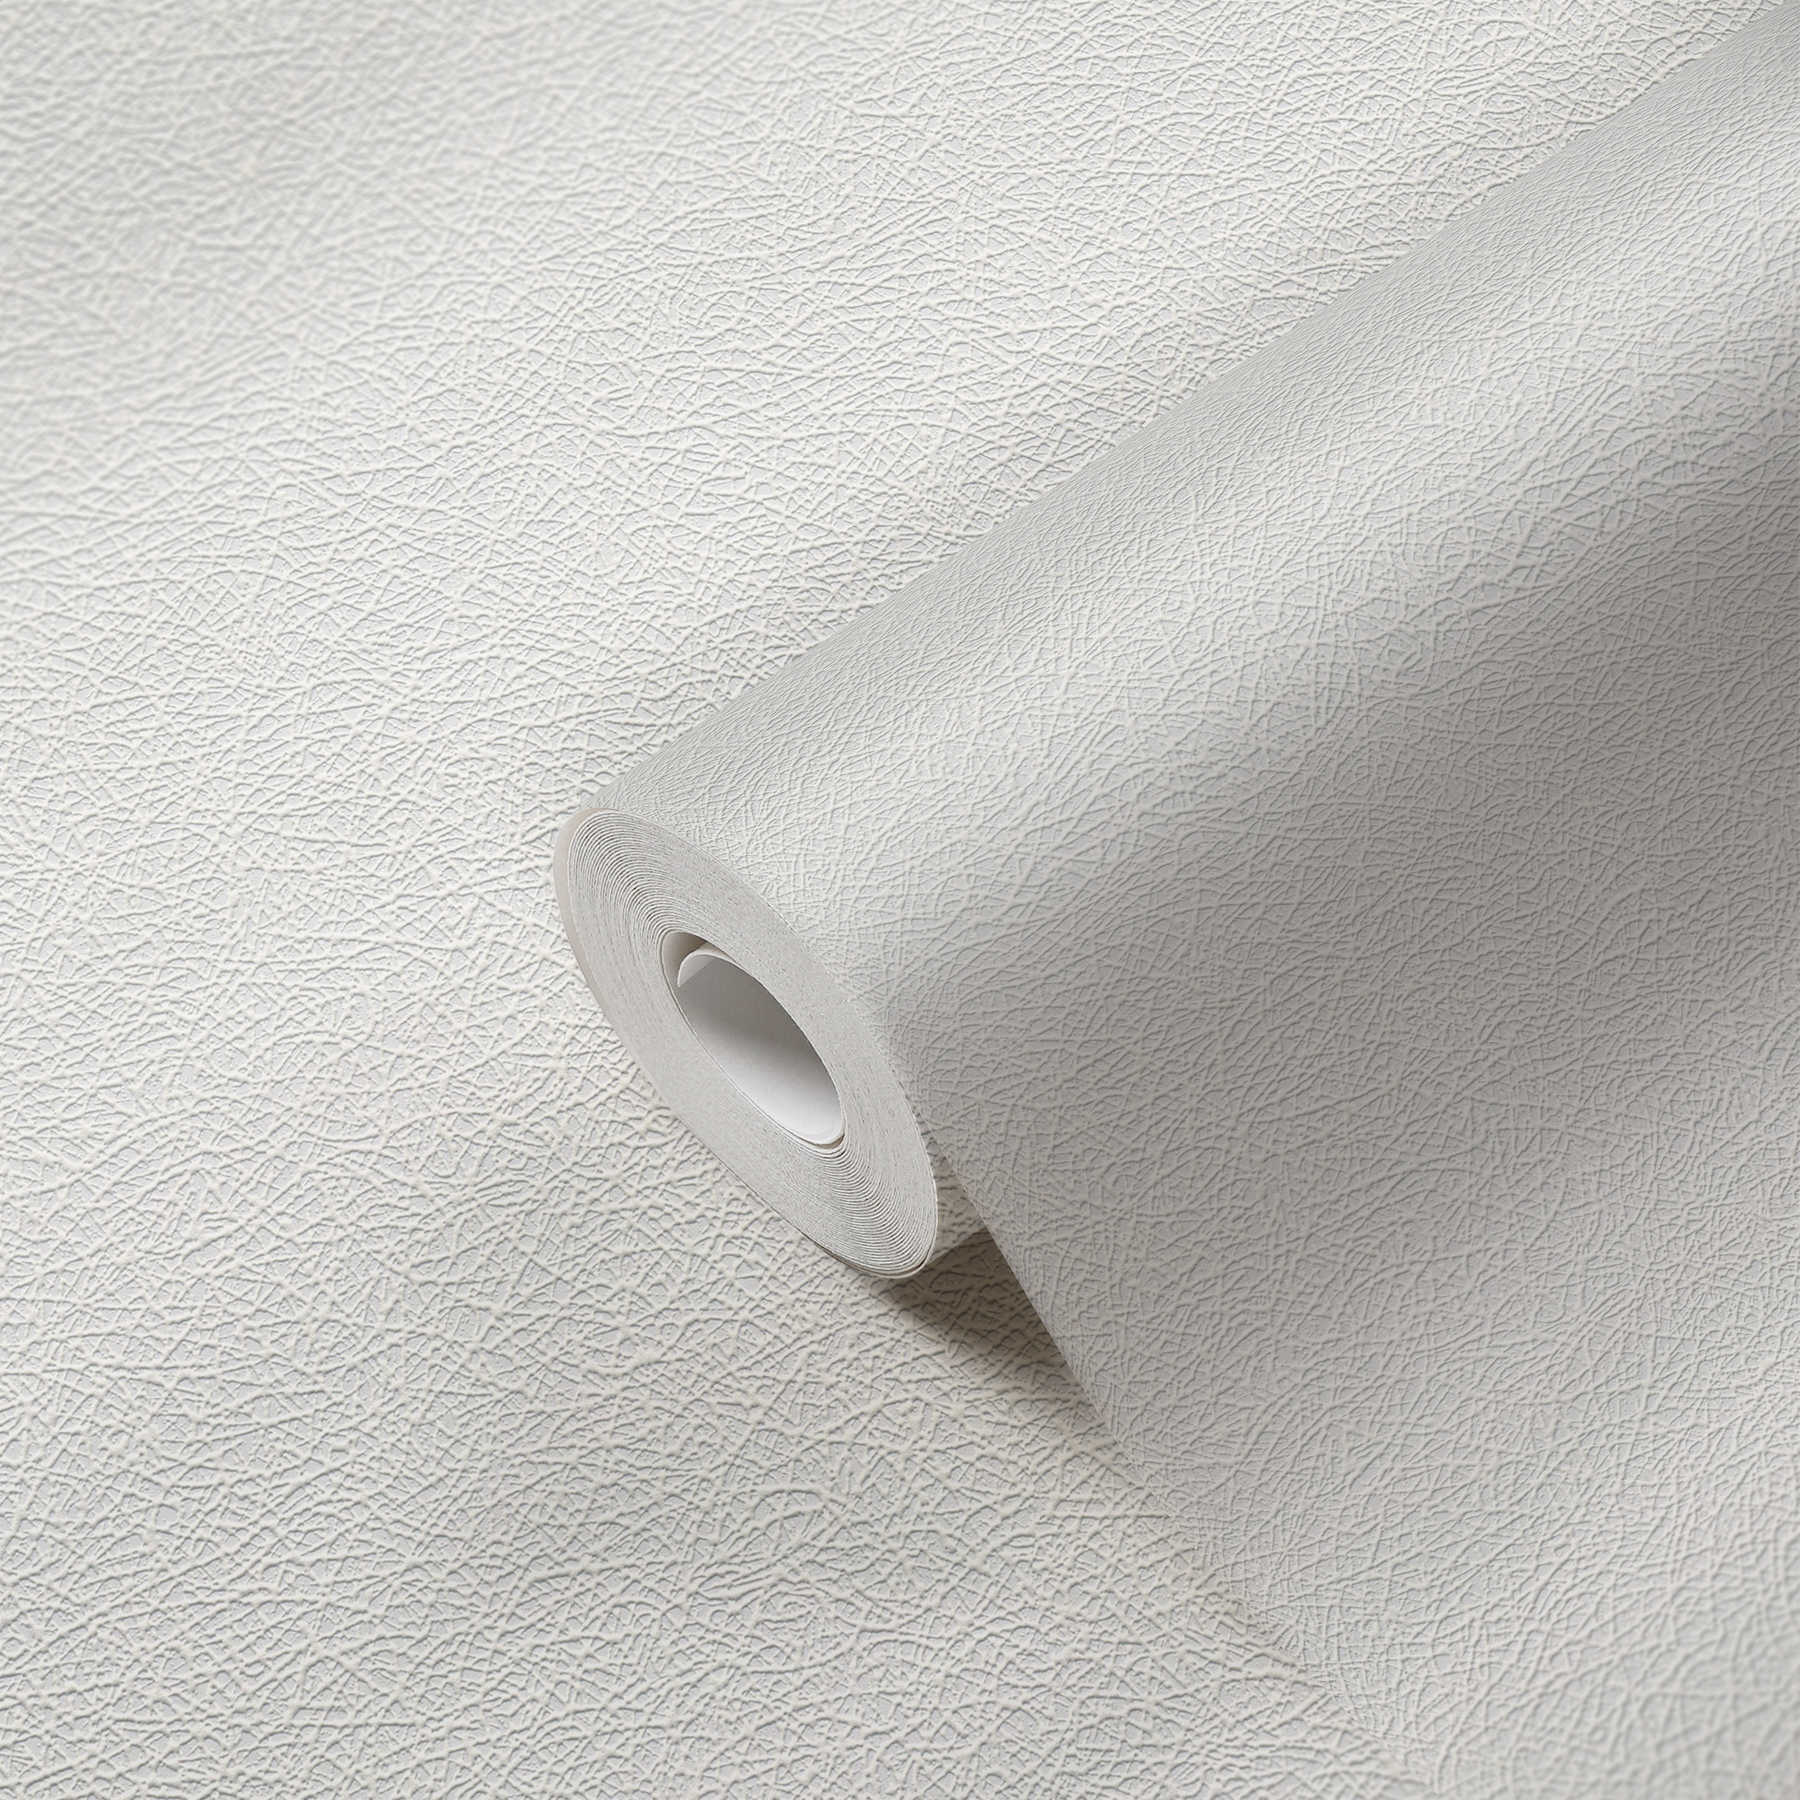             Papel pintado blanco con textura y aspecto de fibra - blanco
        